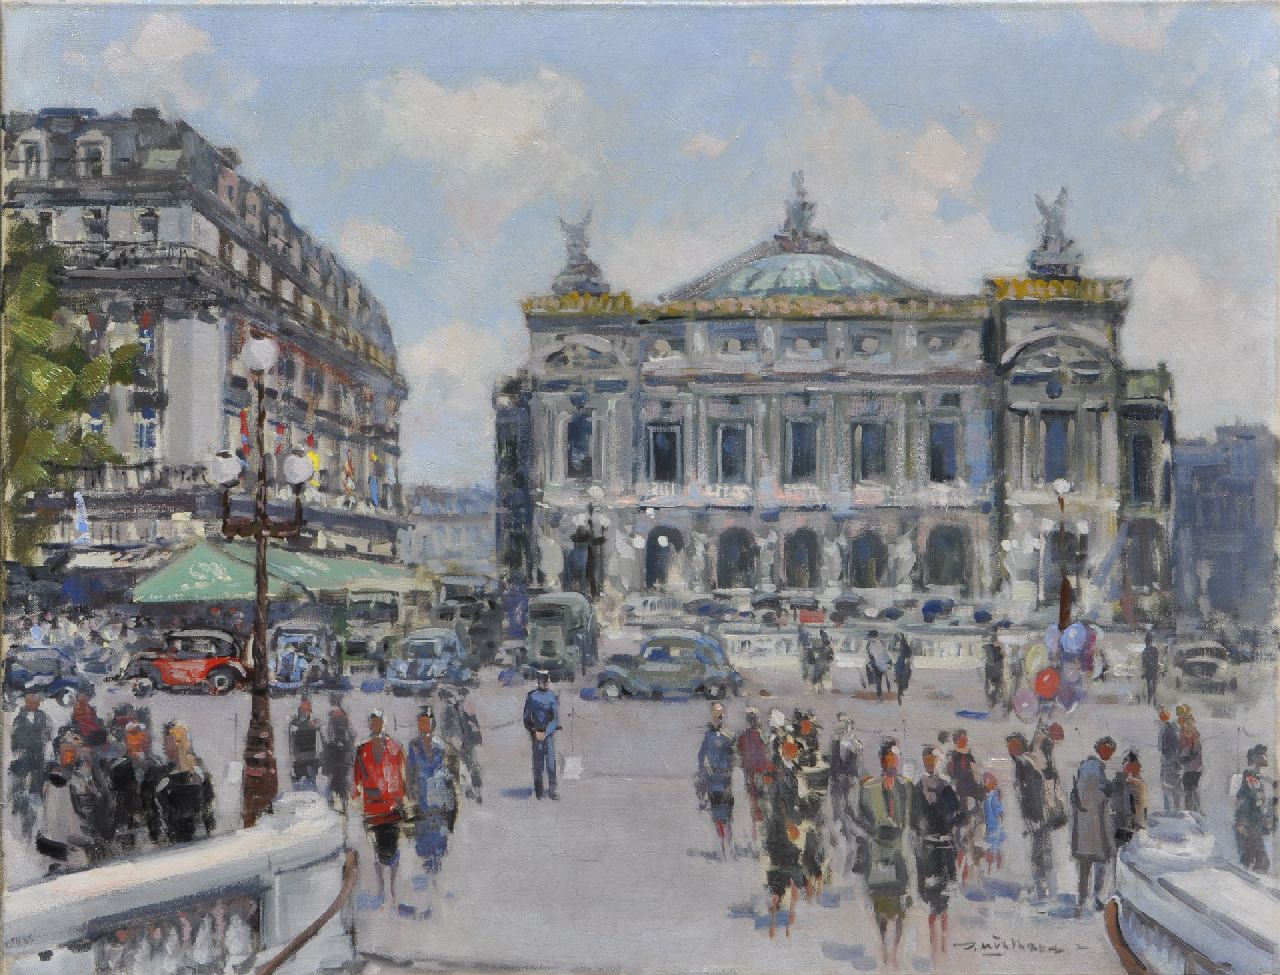 Mühlhaus D.  | Daniël 'Daan' Mühlhaus, The Place de l'Opéra, Paris, oil on canvas 59.9 x 79.9 cm, signed l.r.